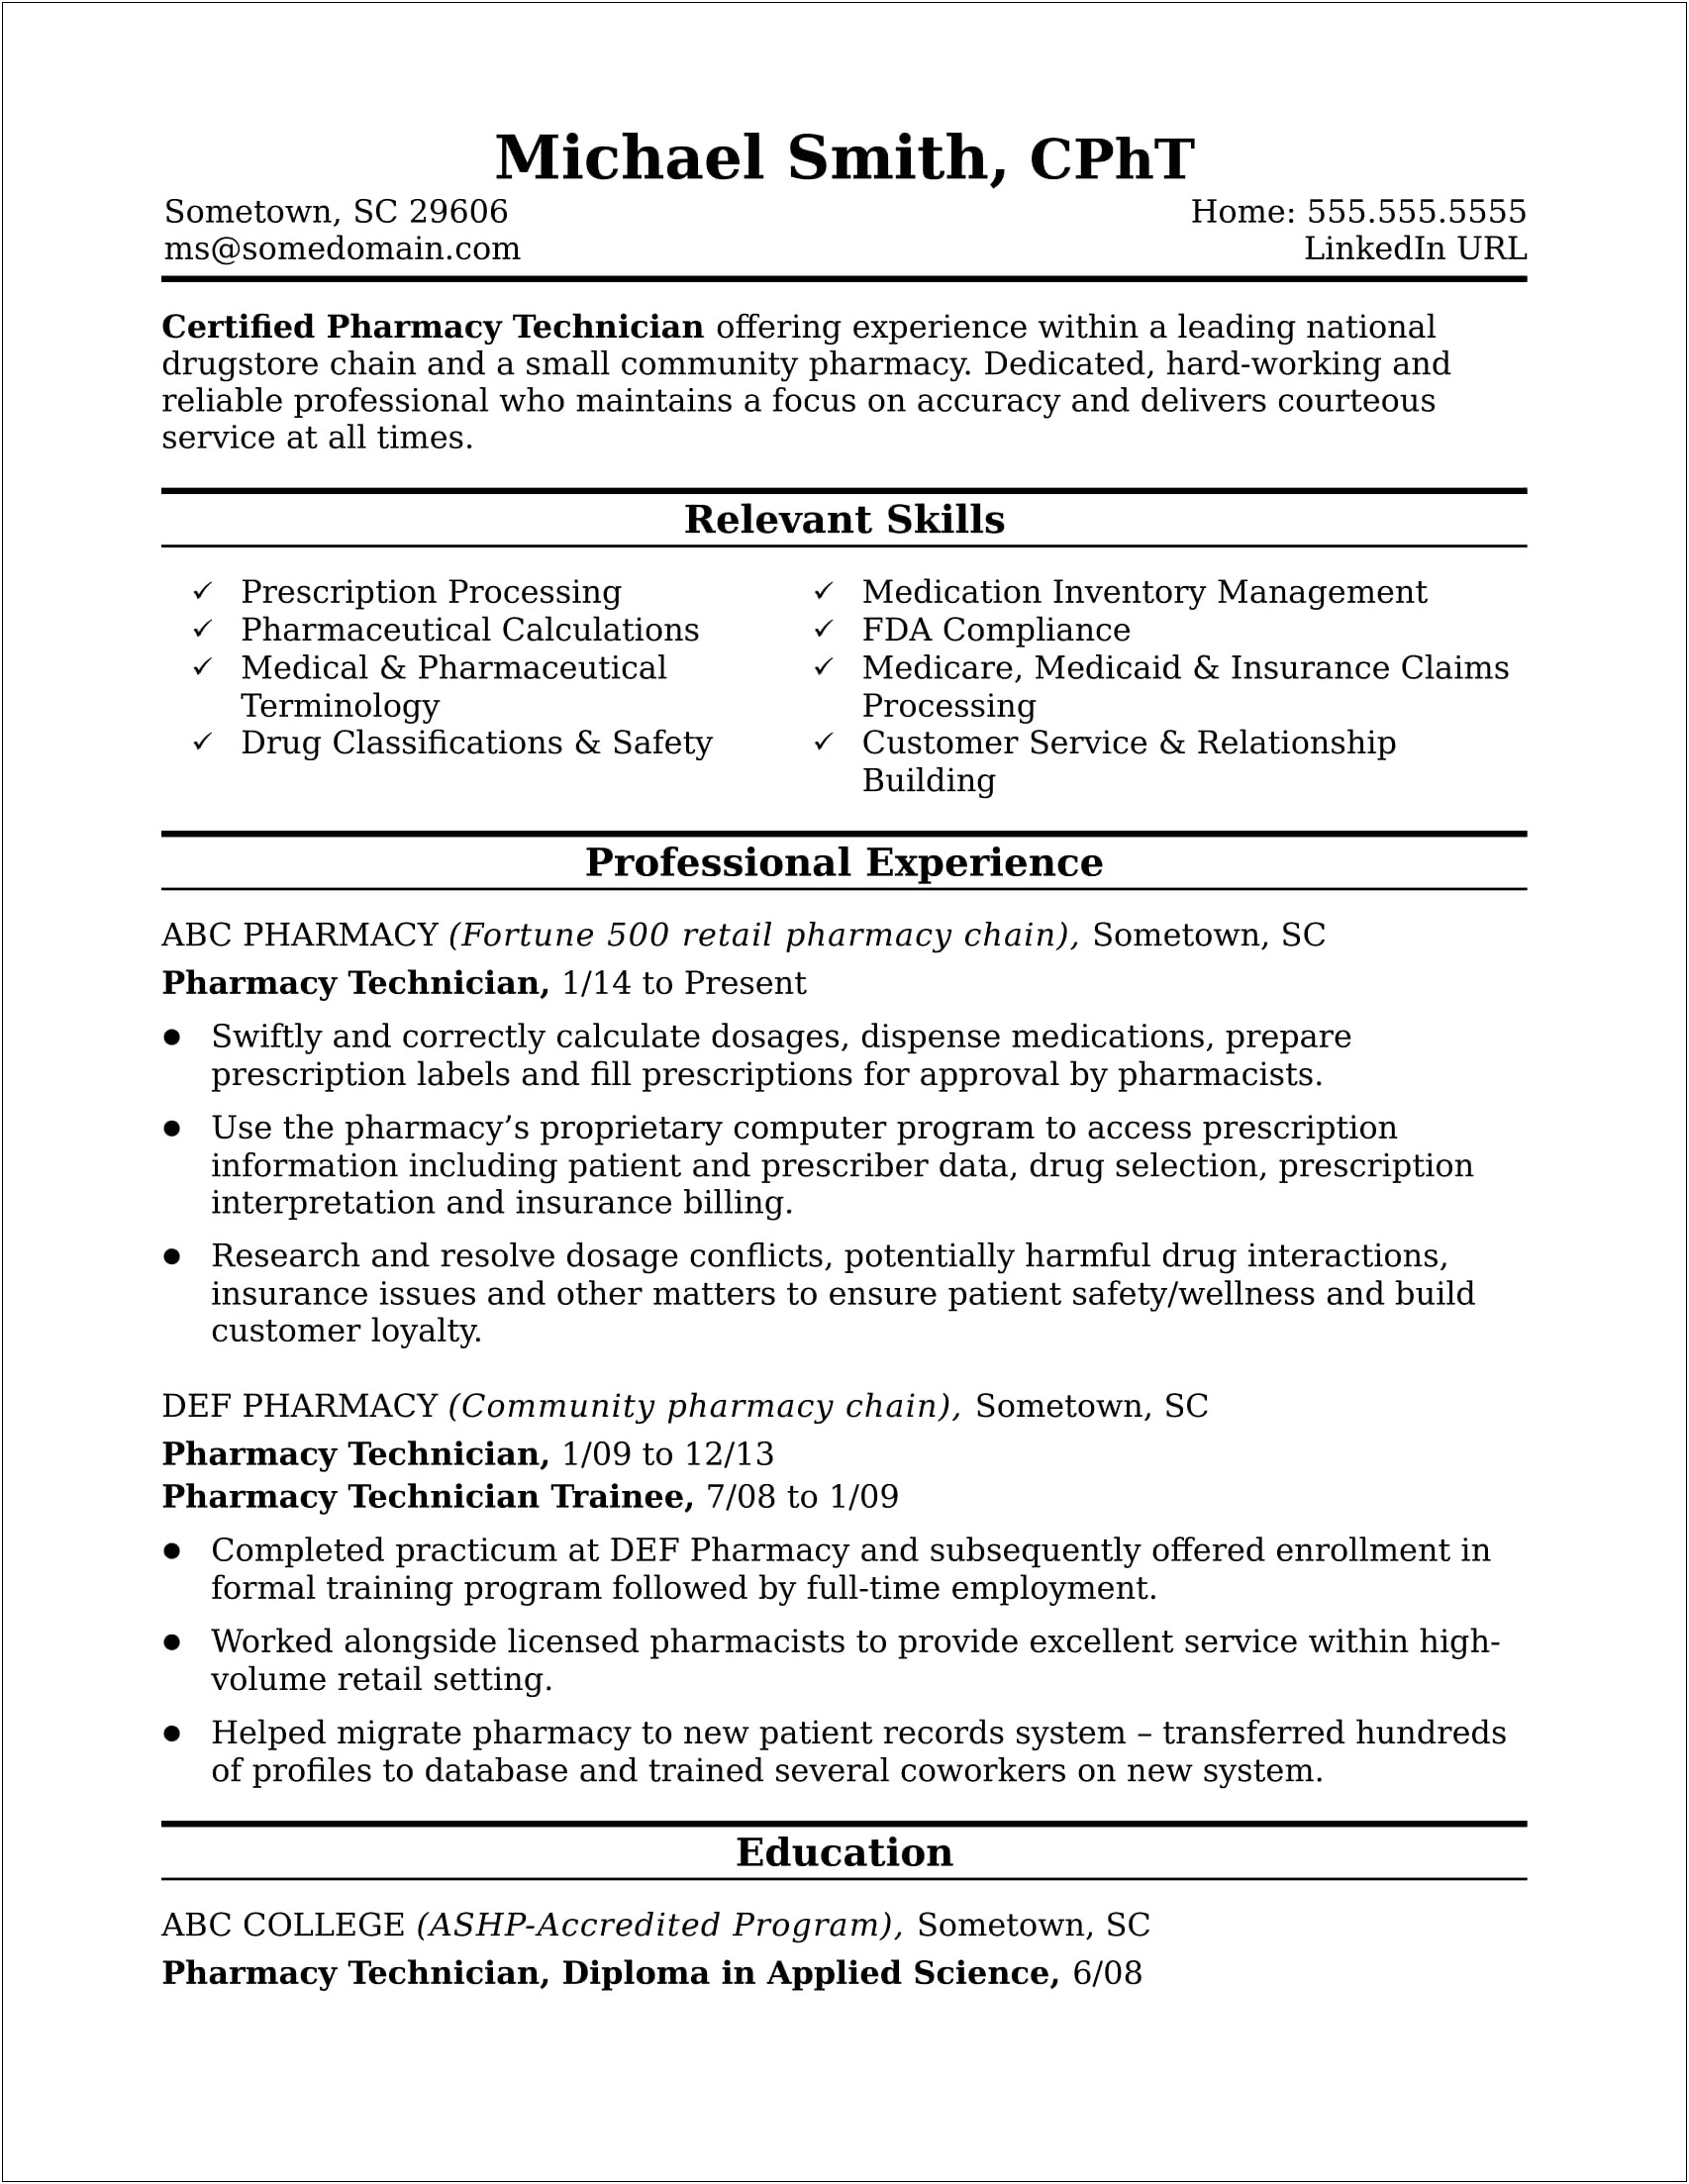 Resume For Applying To Pharmacy School